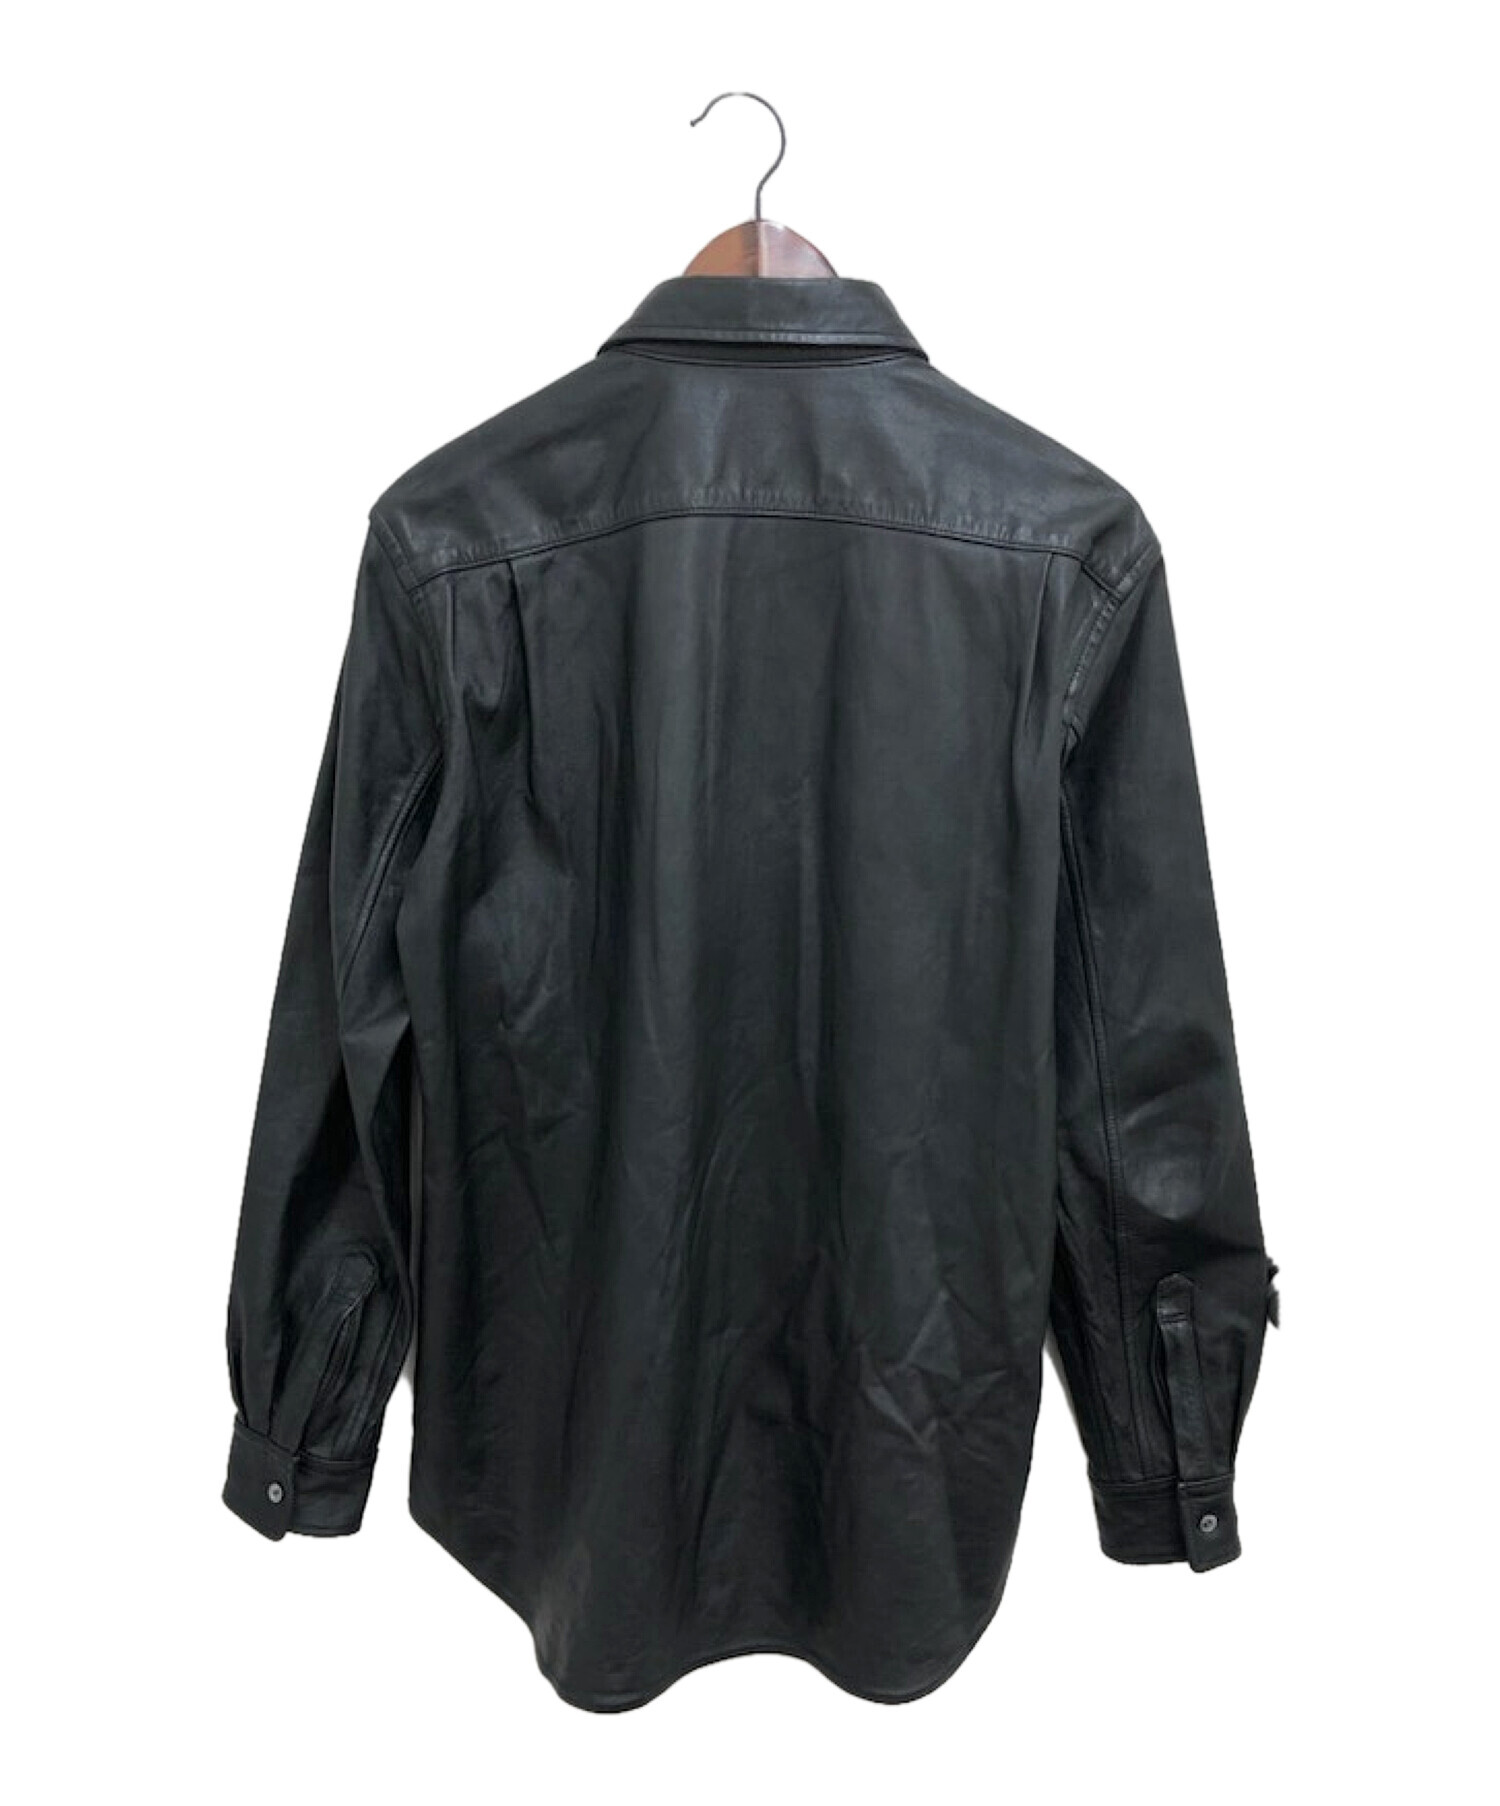 20,640円コムデギャルソン オムプリュス レザーシャツ ブラック メンズMサイズ